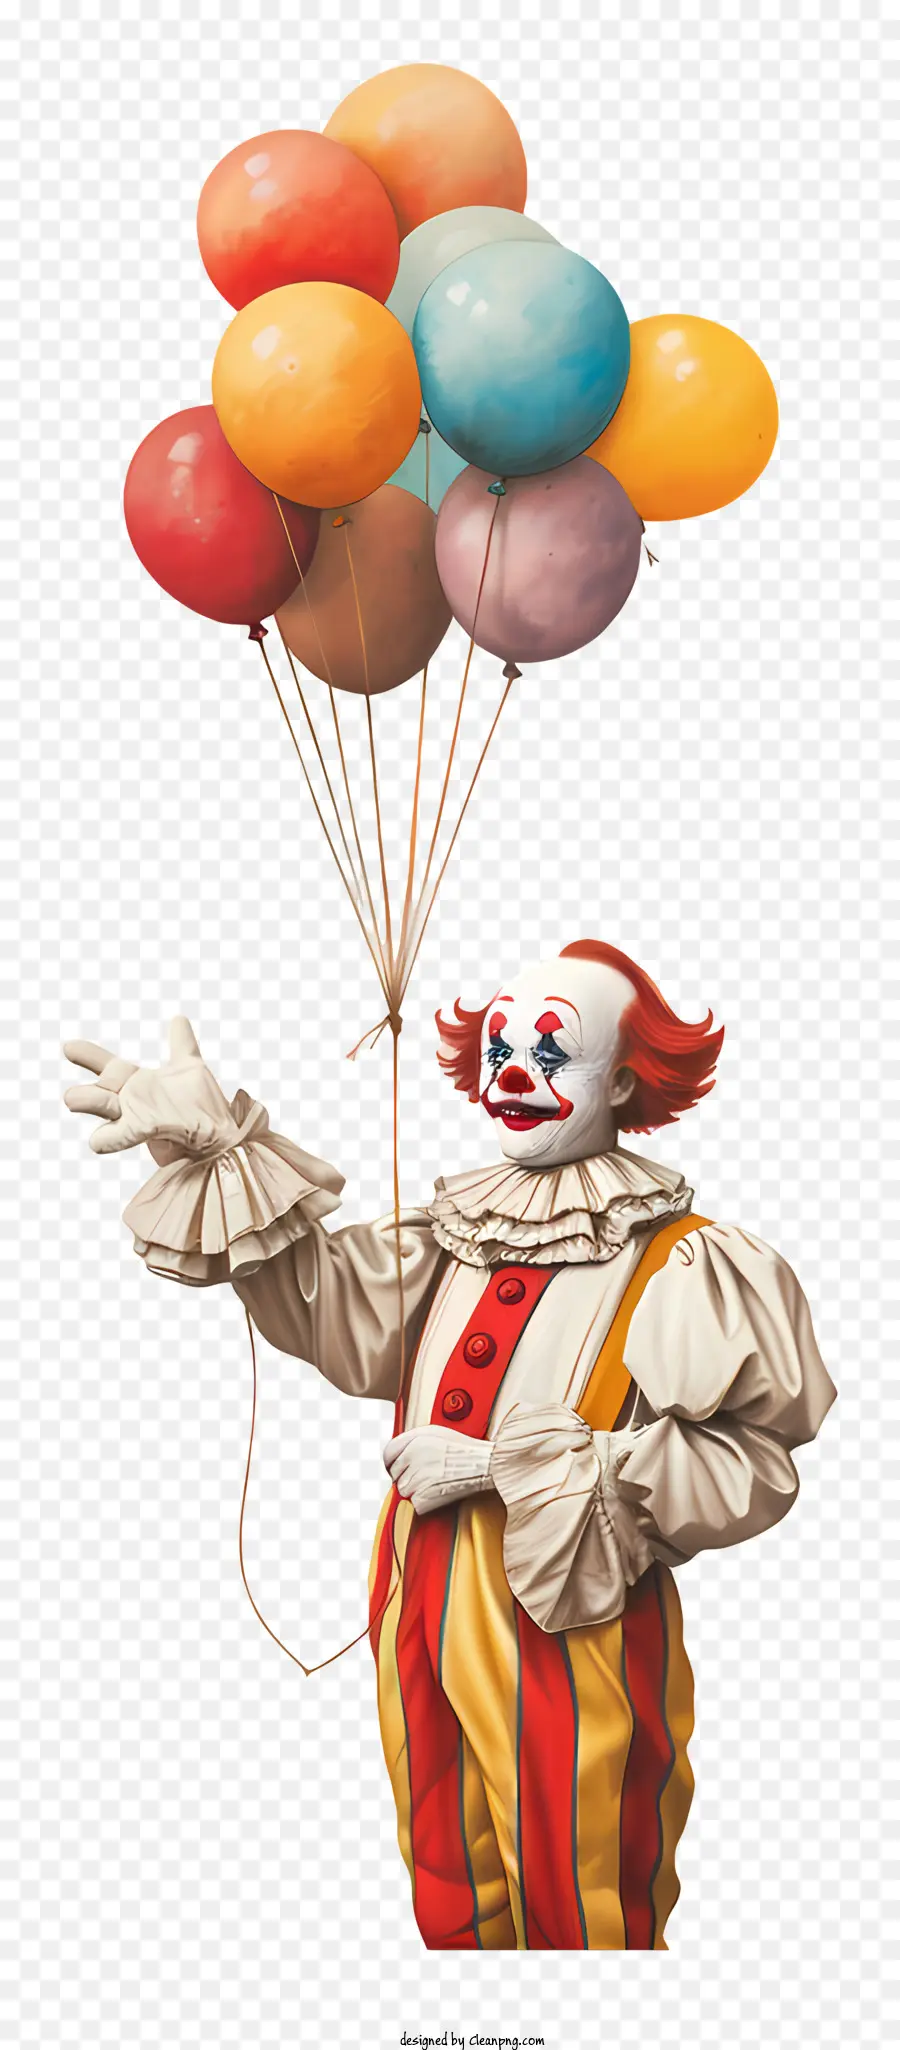 pagliaccio con palloncini carattere cartone animato clown colorati palloncini grandi occhi - Il clown colorato con palloncini rappresenta la libertà e la gioia